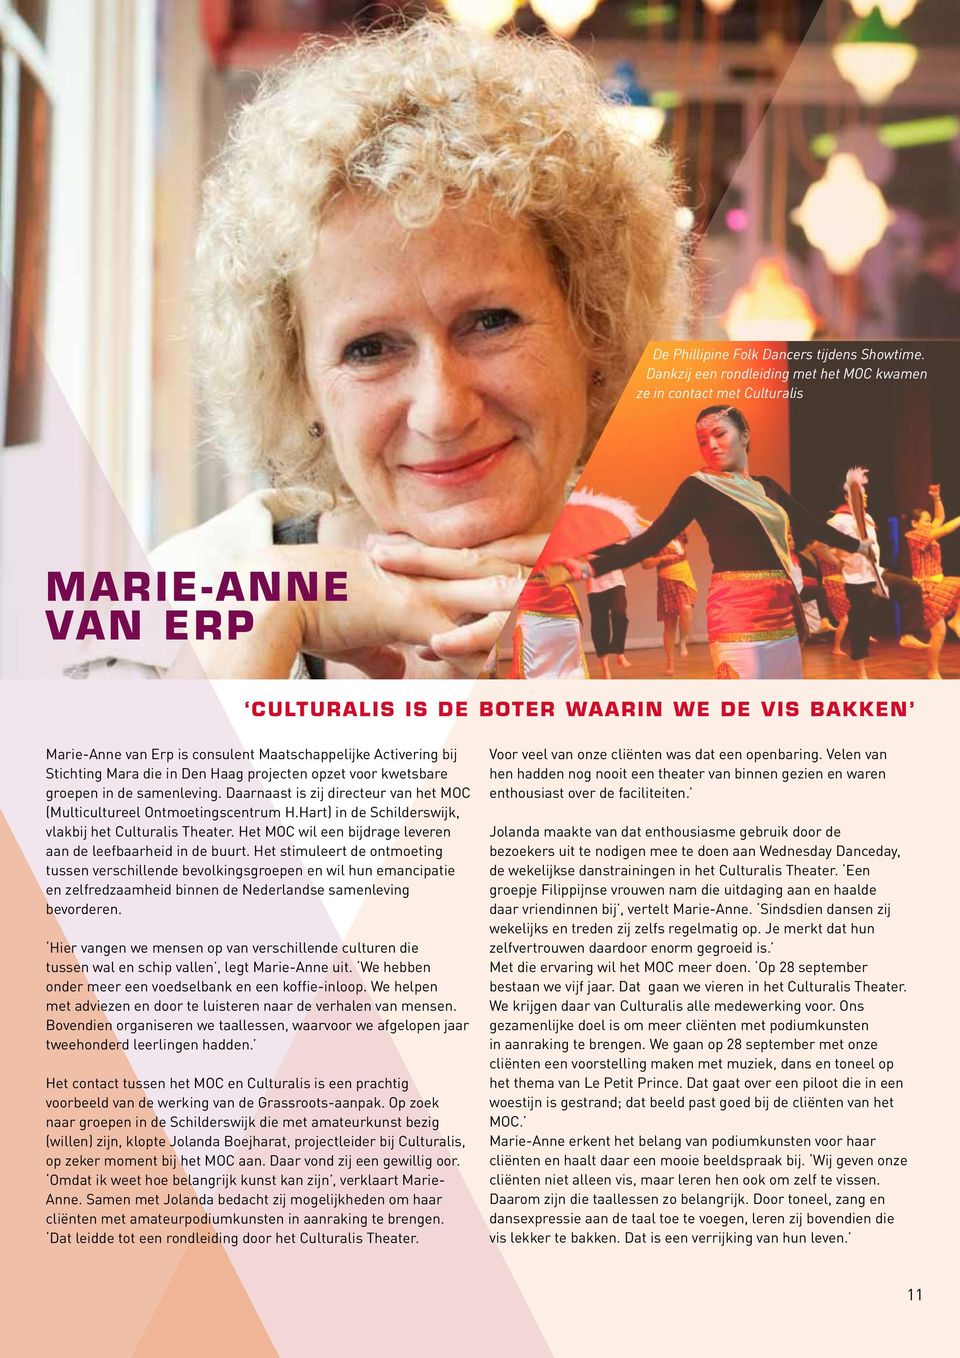 bij Stichting Mara die in Den Haag projecten opzet voor kwetsbare groepen in de samenleving. Daarnaast is zij directeur van het MOC (Multicultureel Ontmoetingscentrum H.